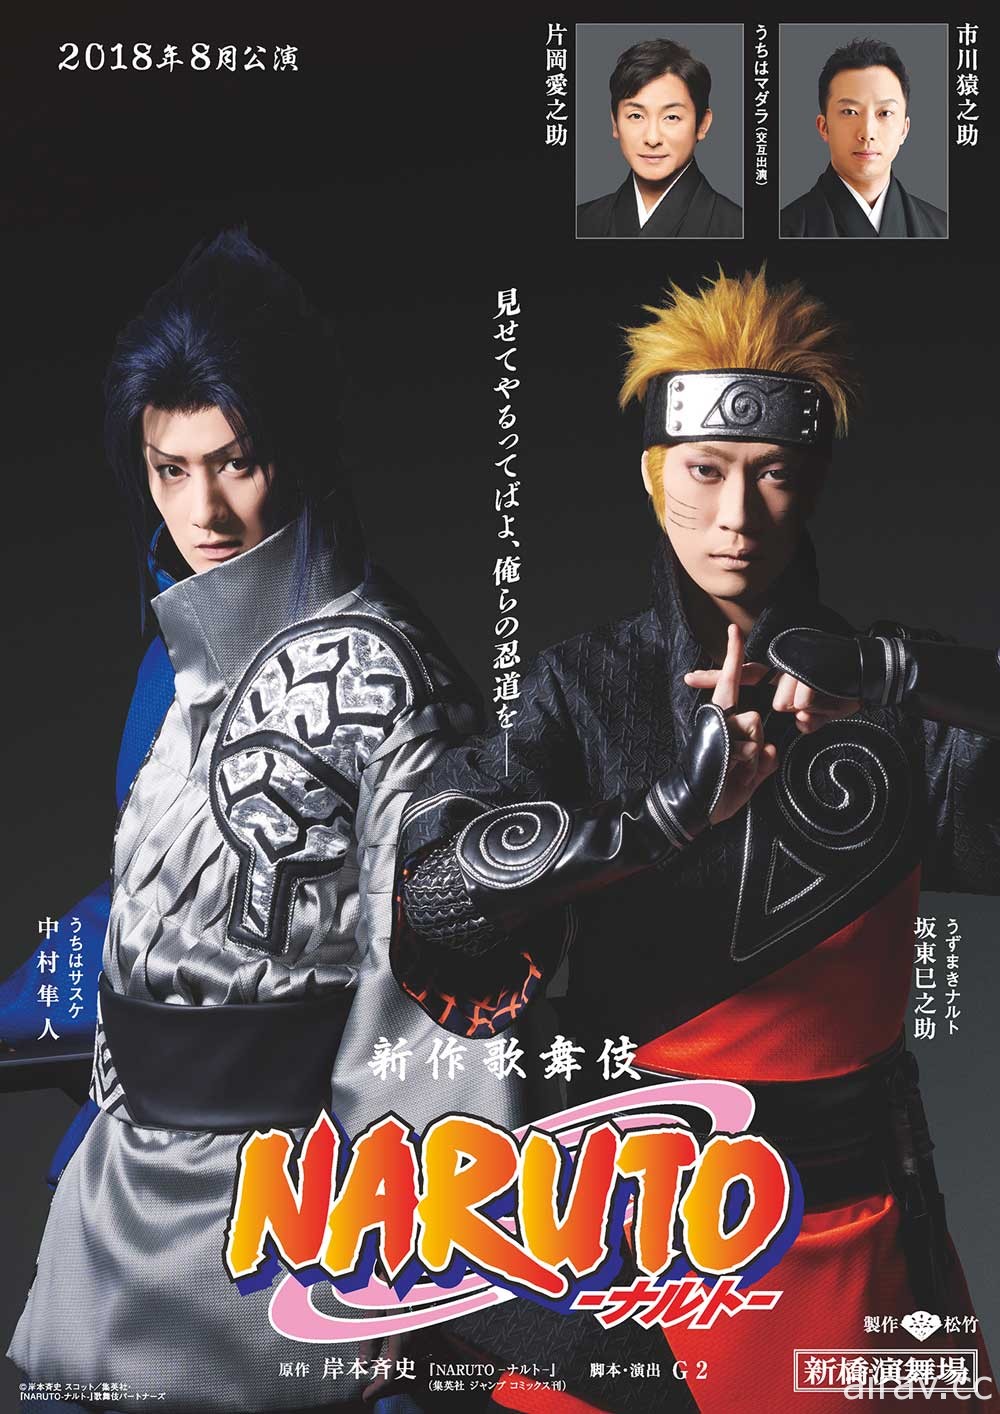 《火影忍者》將於今年 8 月在日本推出歌舞伎舞台公演 主宣傳照釋出